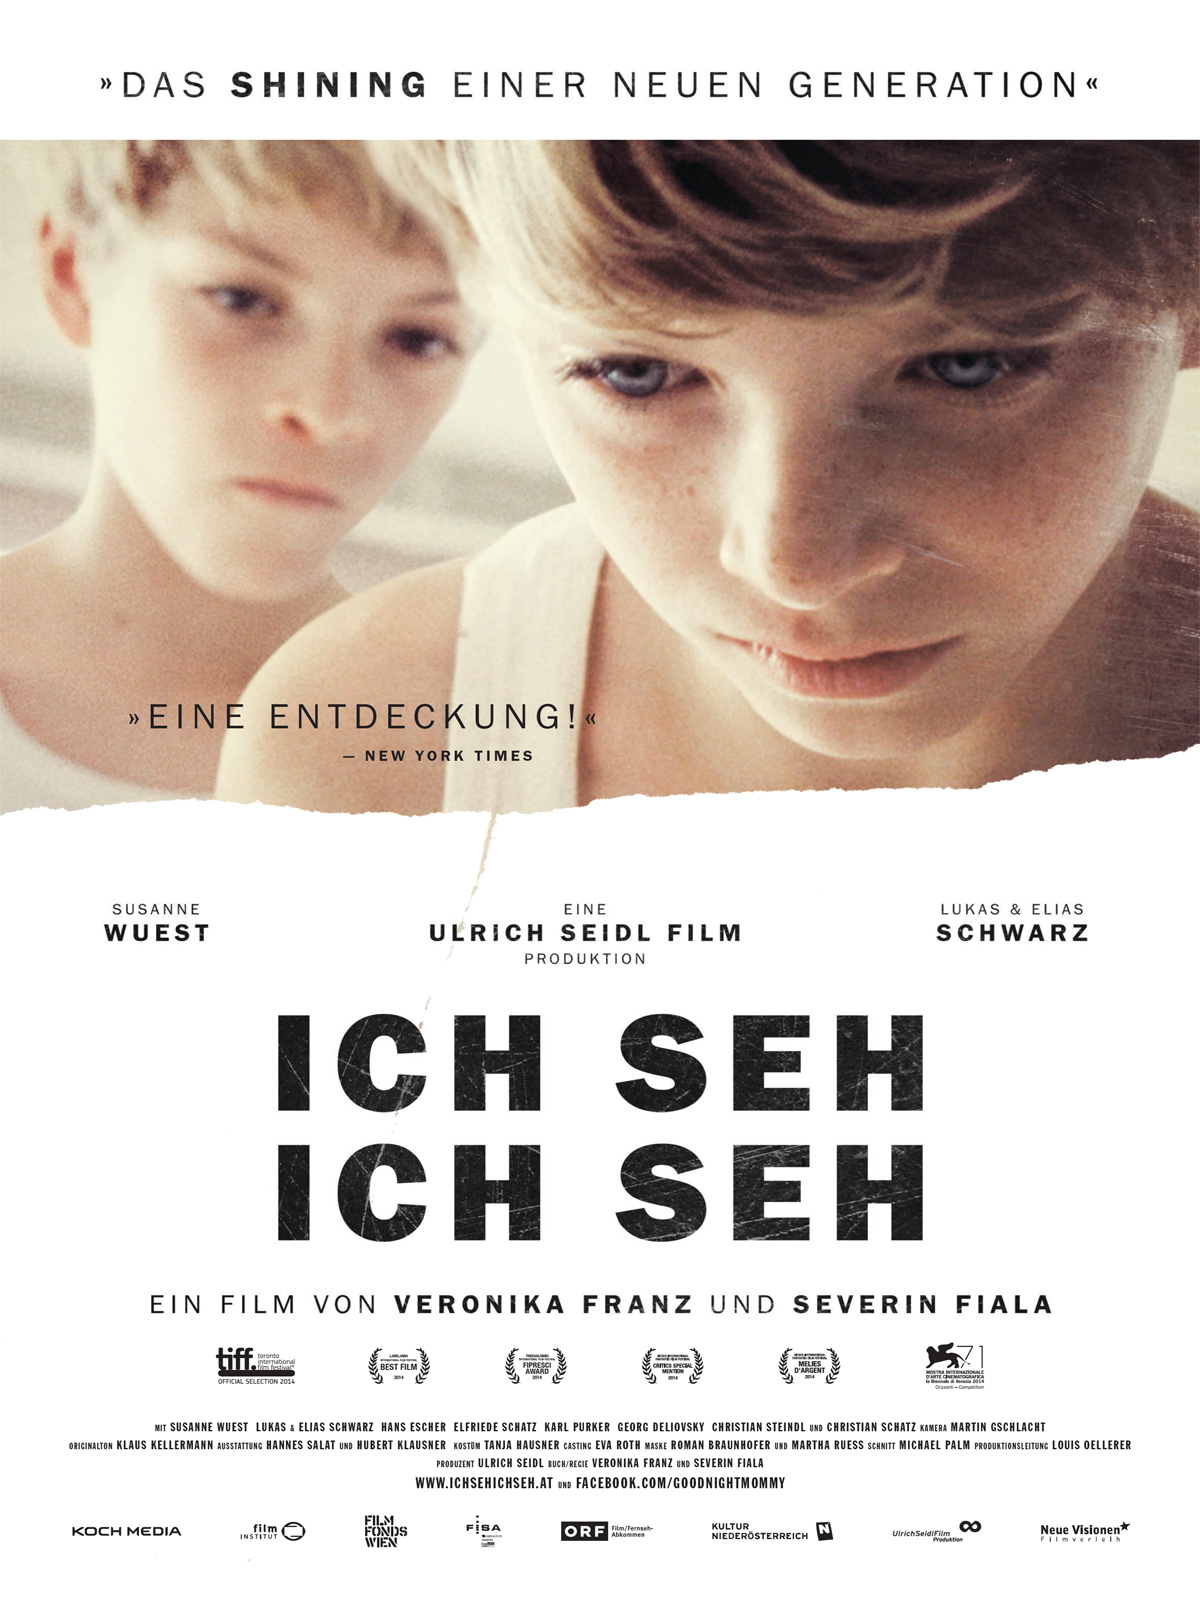 Я вижу, я вижу / Ich seh, Ich seh (2014)